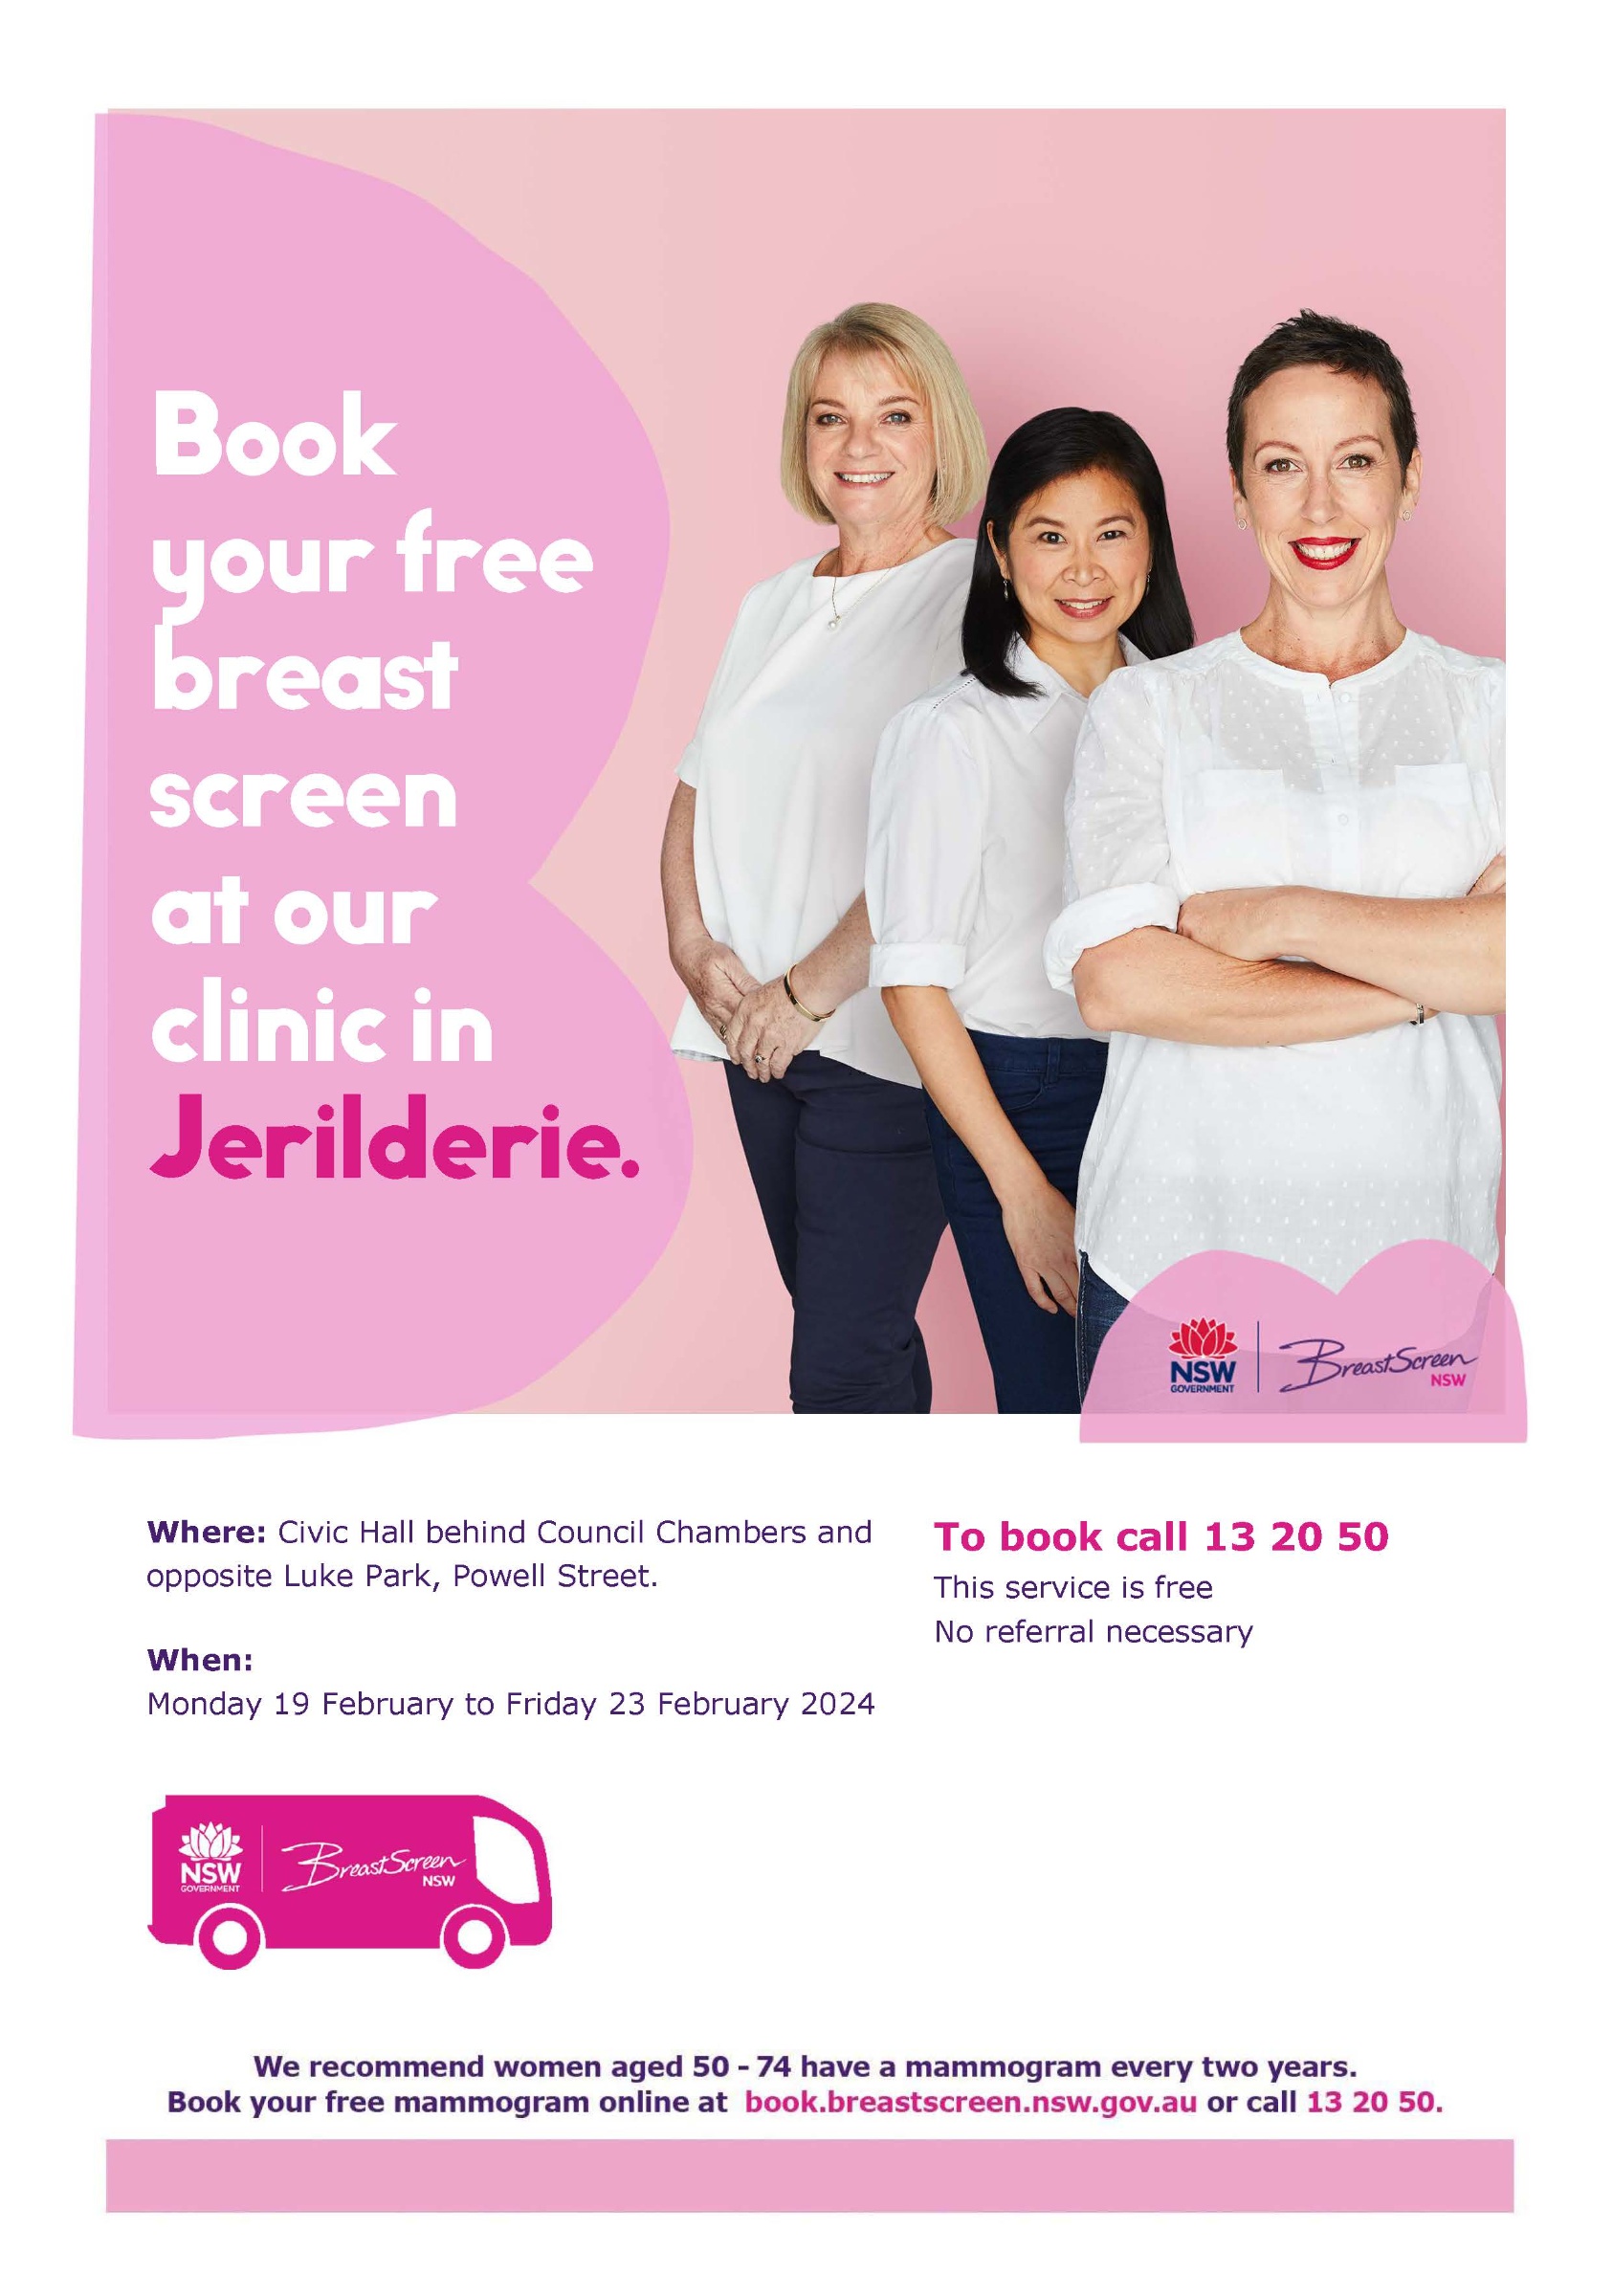 Breastscreen Van Visit - Jerilderie